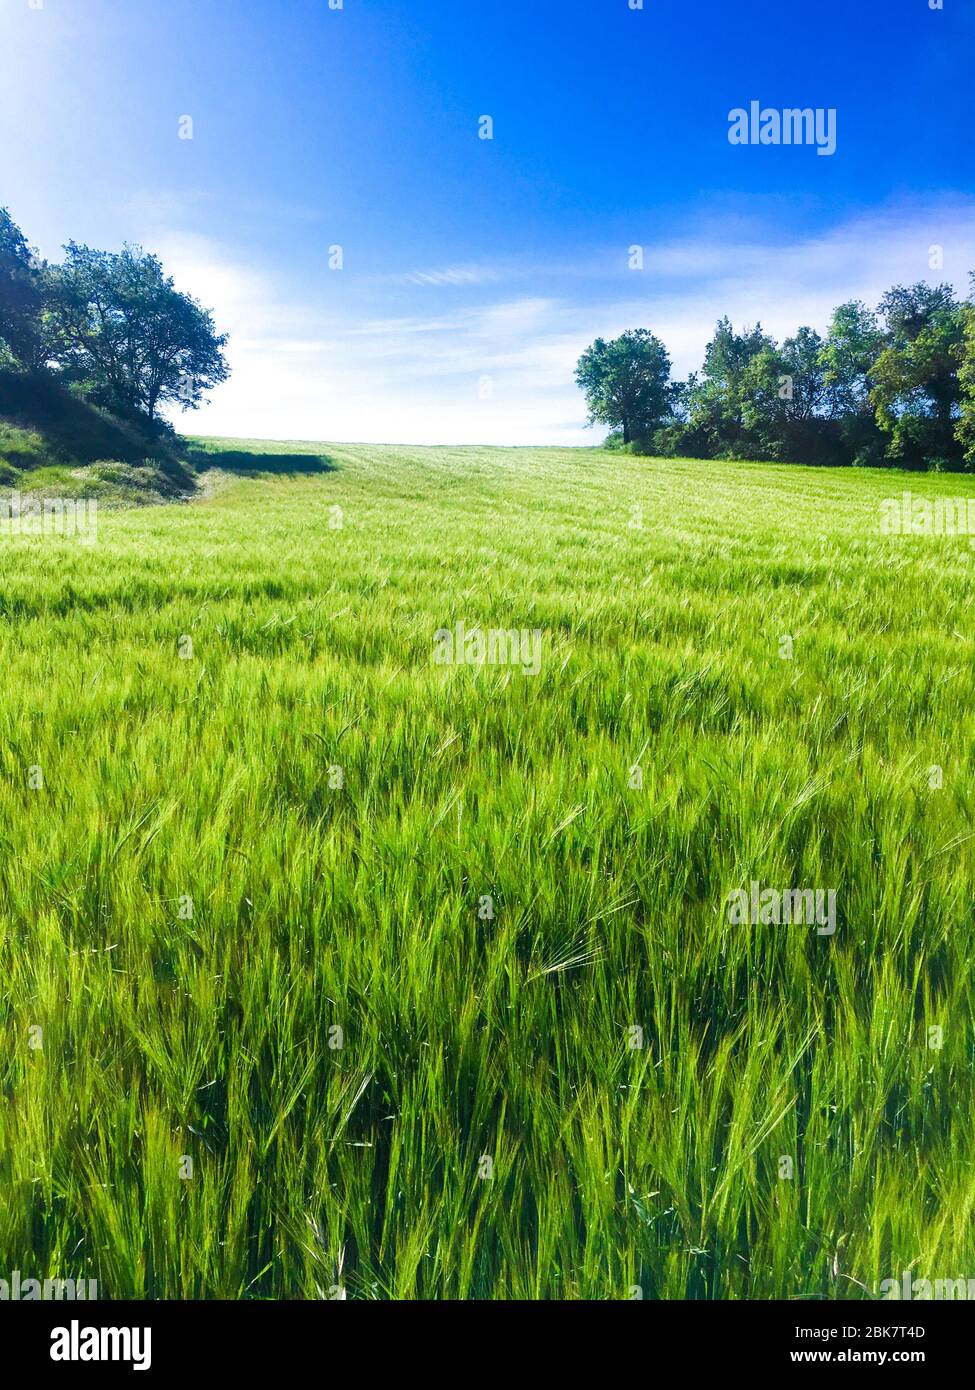 Schöner sonniger Frühlingstag mit grünem Weizengras und einem strahlend blauen Himmel. Gehen Sie nach draußen, um sich wieder frei zu fühlen. Stockfoto